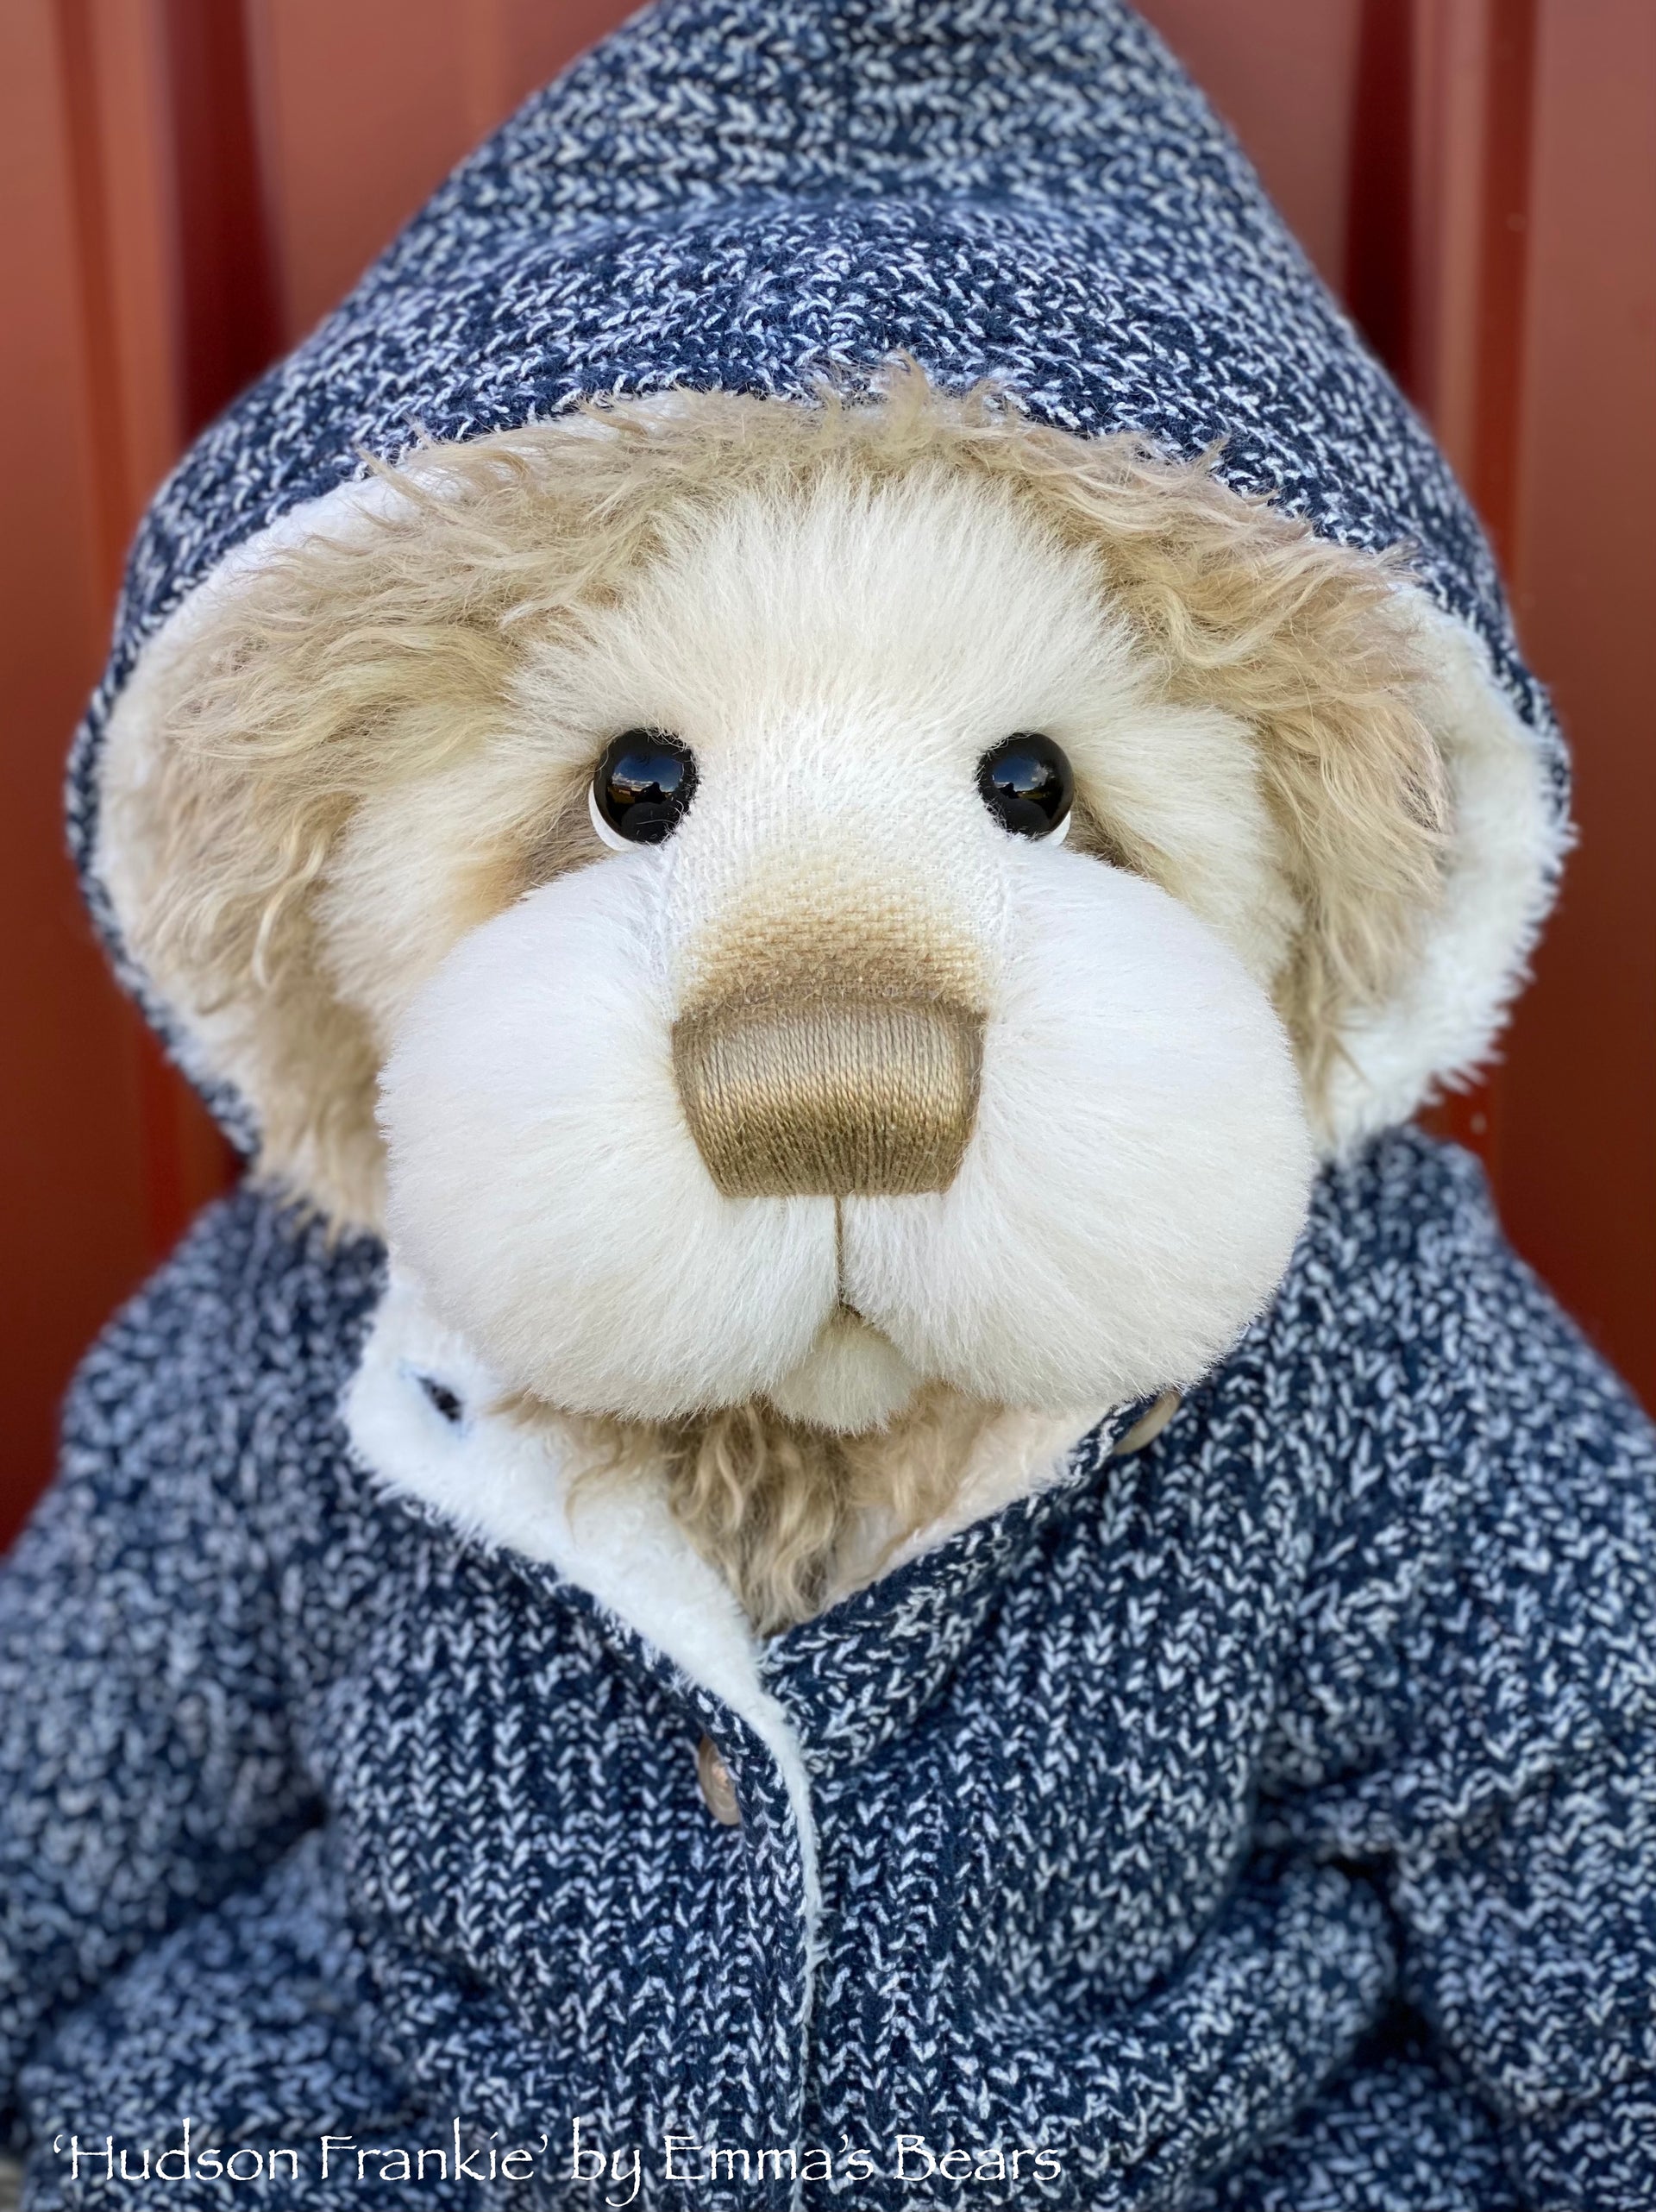 Hudson Frankie - 21" Faux Fur and Alpaca Artist Bear by Emma's Bears - OOAK